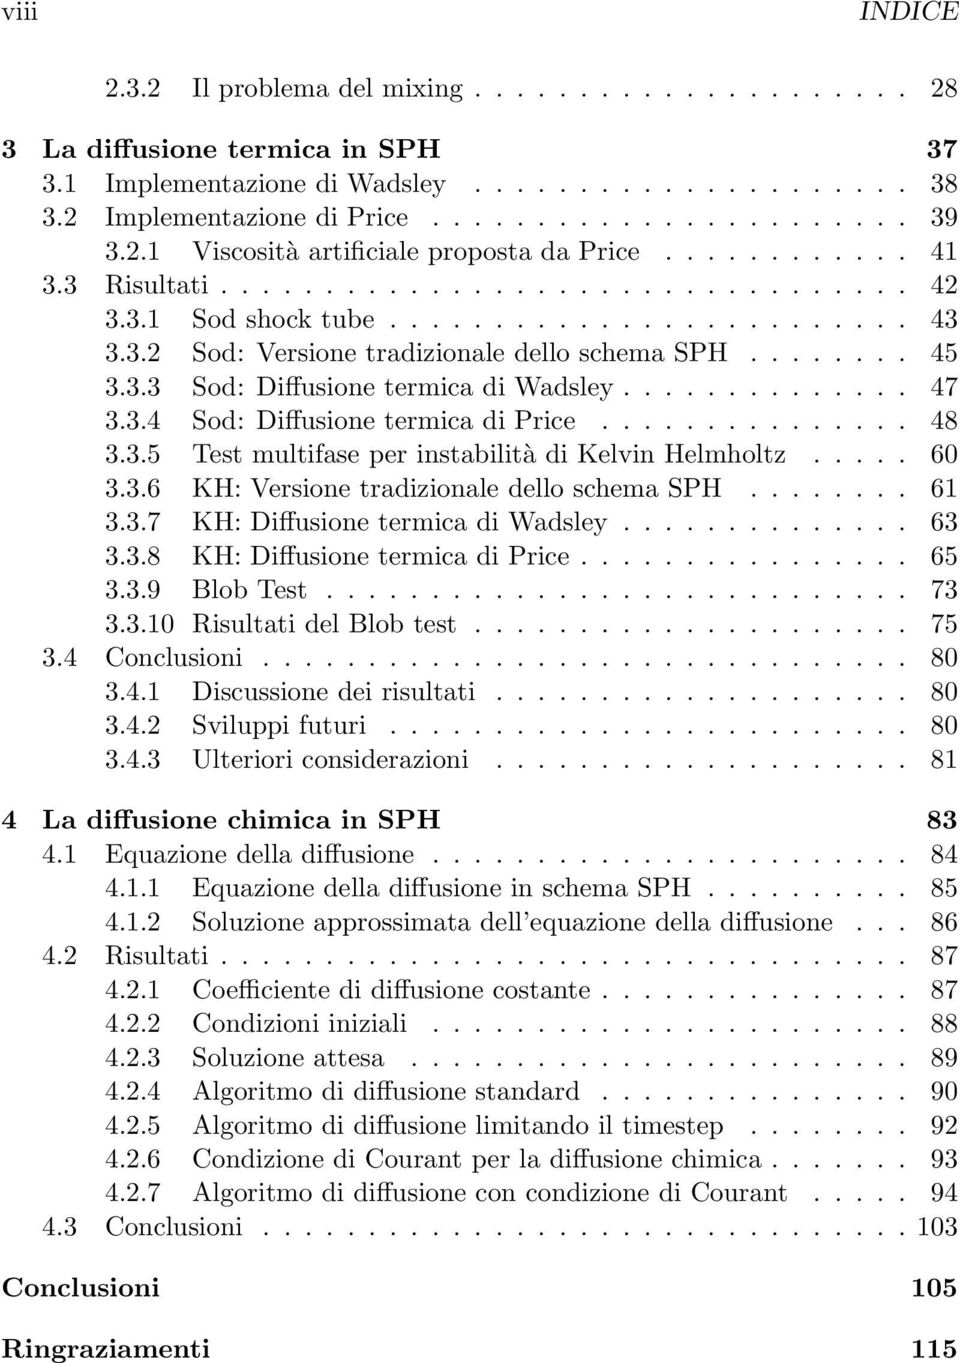 ....... 45 3.3.3 Sod: Diffusione termica di Wadsley.............. 47 3.3.4 Sod: Diffusione termica di Price............... 48 3.3.5 Test multifase per instabilità di Kelvin Helmholtz..... 60 3.3.6 KH: Versione tradizionale dello schema SPH.